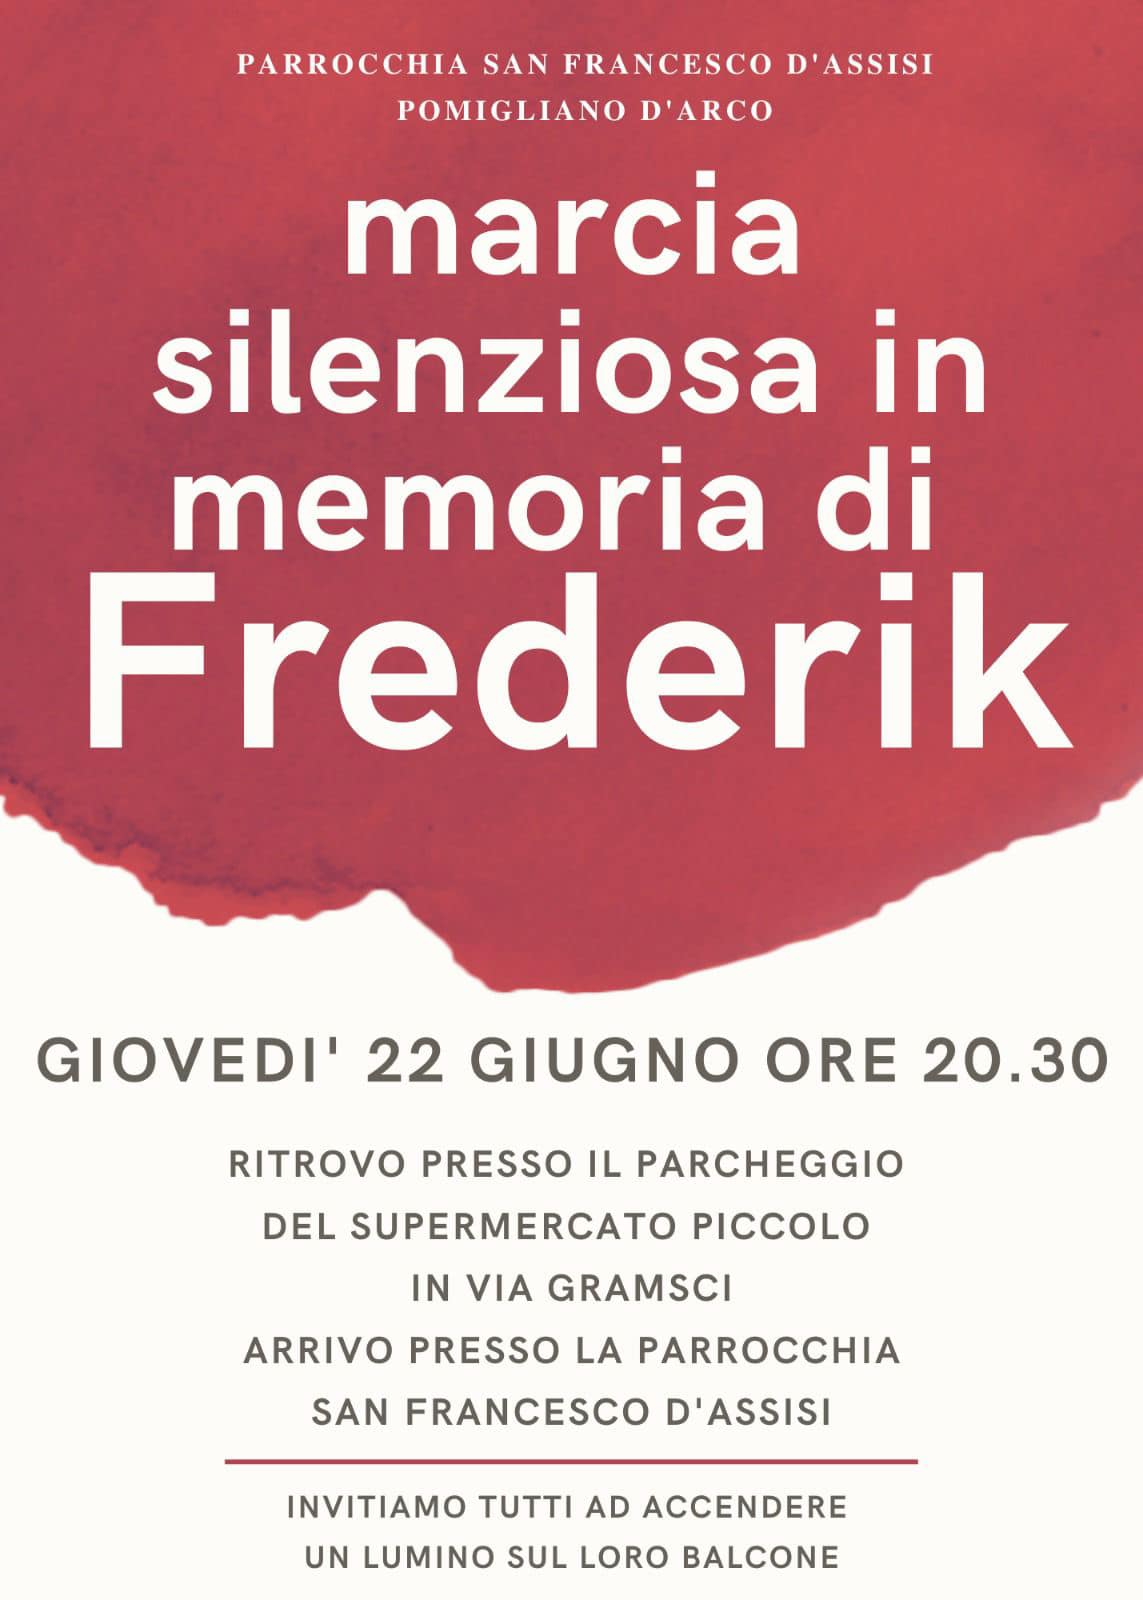 Marcia silenziosa per Frederik a Pomigliano D'Arco